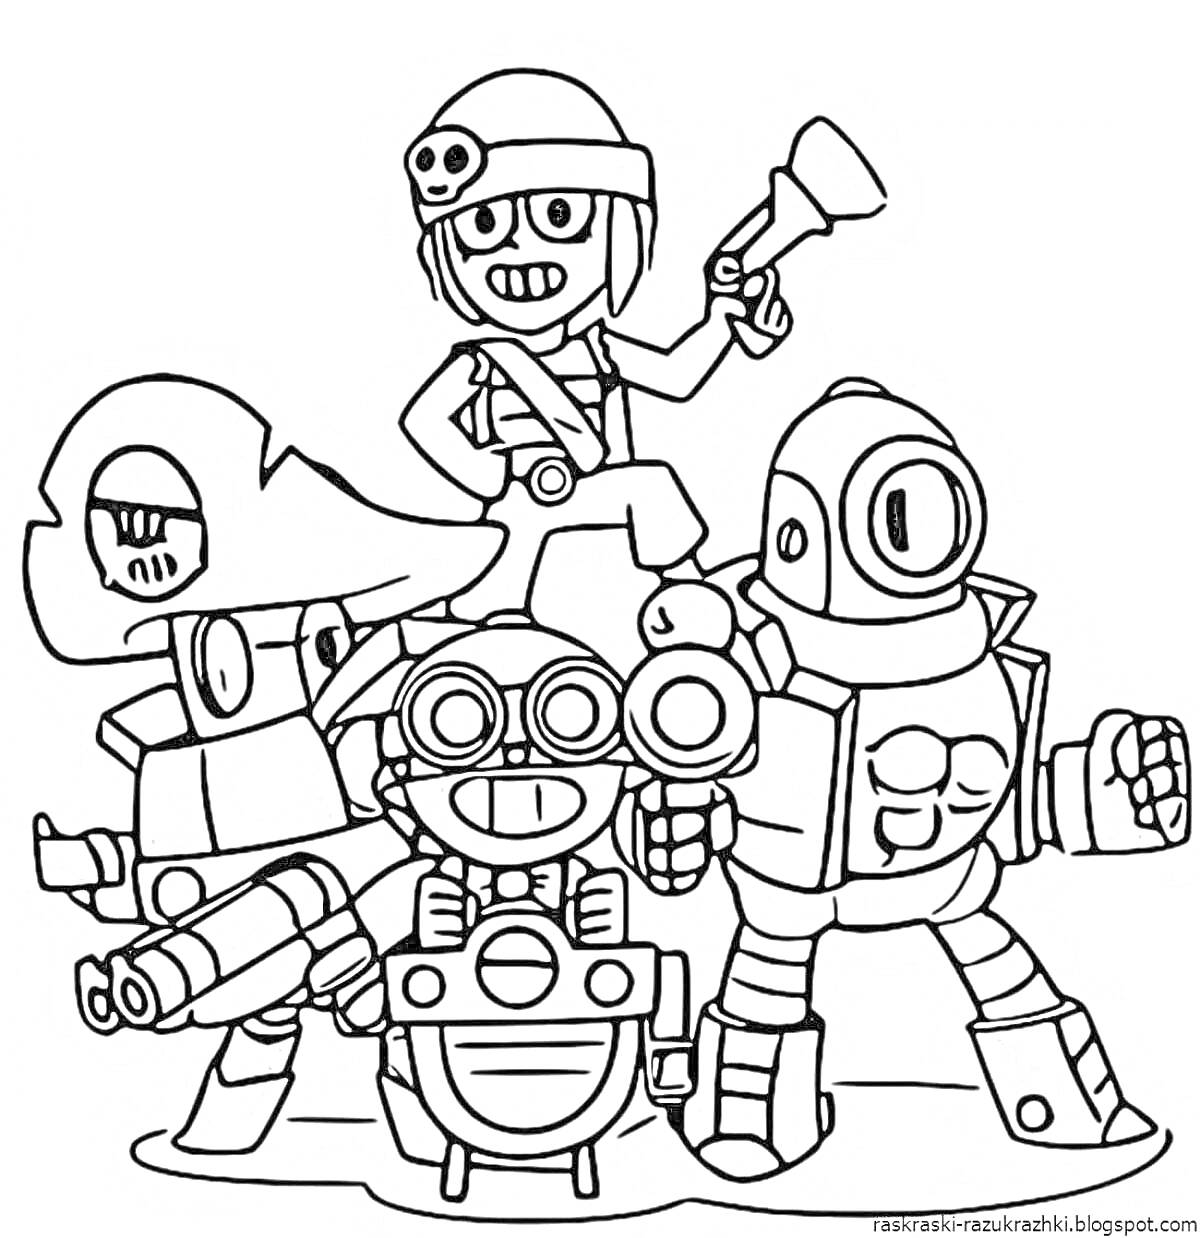 Раскраска Детские раскраски по мотивам Браво Старс с персонажами: Летающий робот, Персонаж с винтовкой, Робот с очками, Робот с круглыми глазами